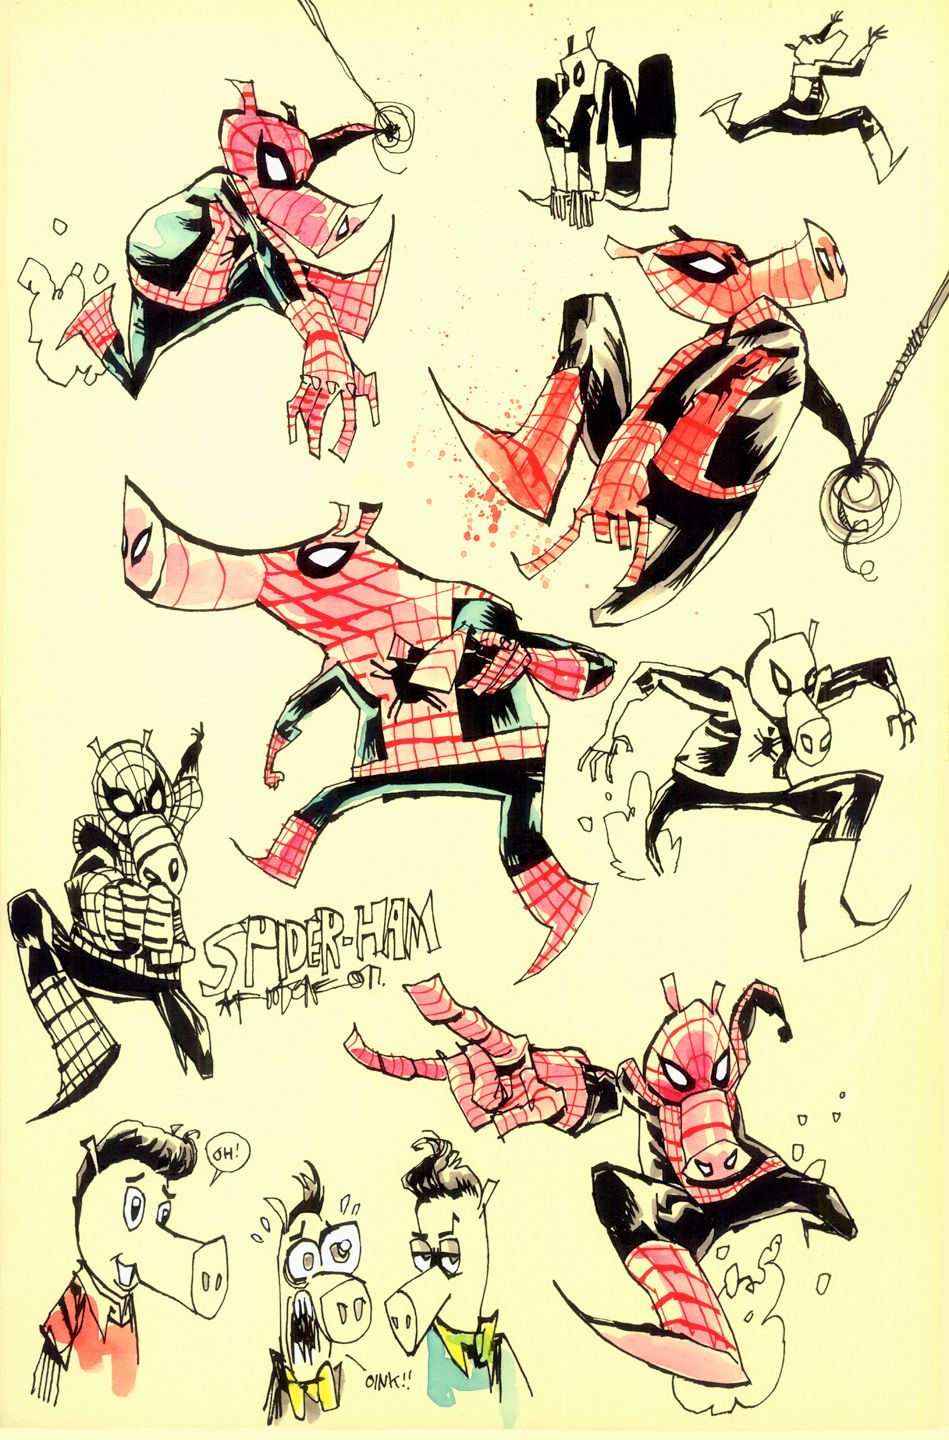 Peter Porker Spider-Ham Spider-Man: Into the Spider-Verse Concept Art #1